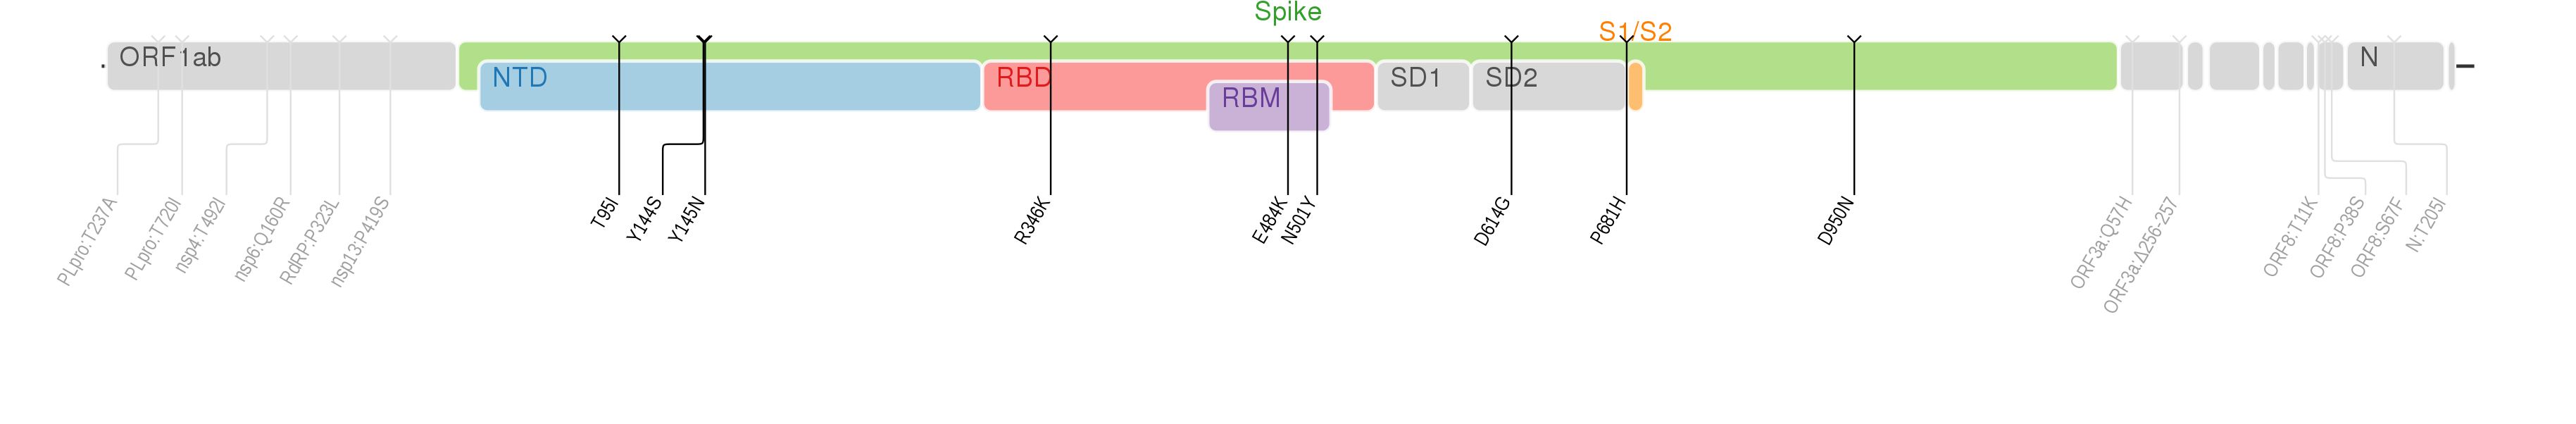 スパイクタンパク質に焦点を当てたSARS-CoV-2のゲノムマップ上にプロットされたミュー株のアミノ酸変異[10]。